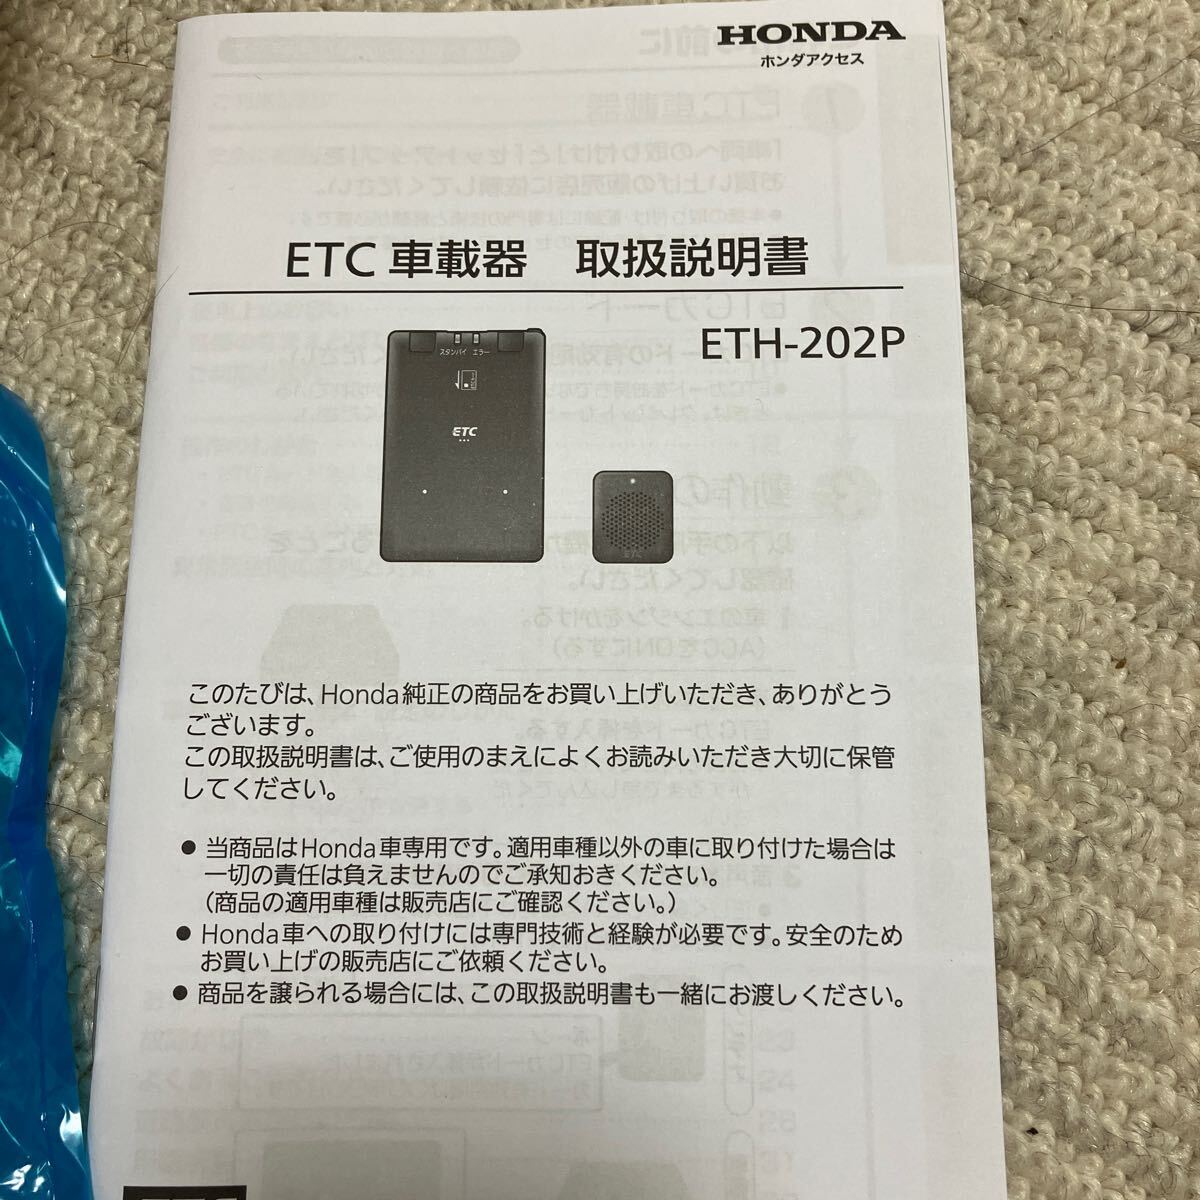  Honda access new goods ETC ETH-202P